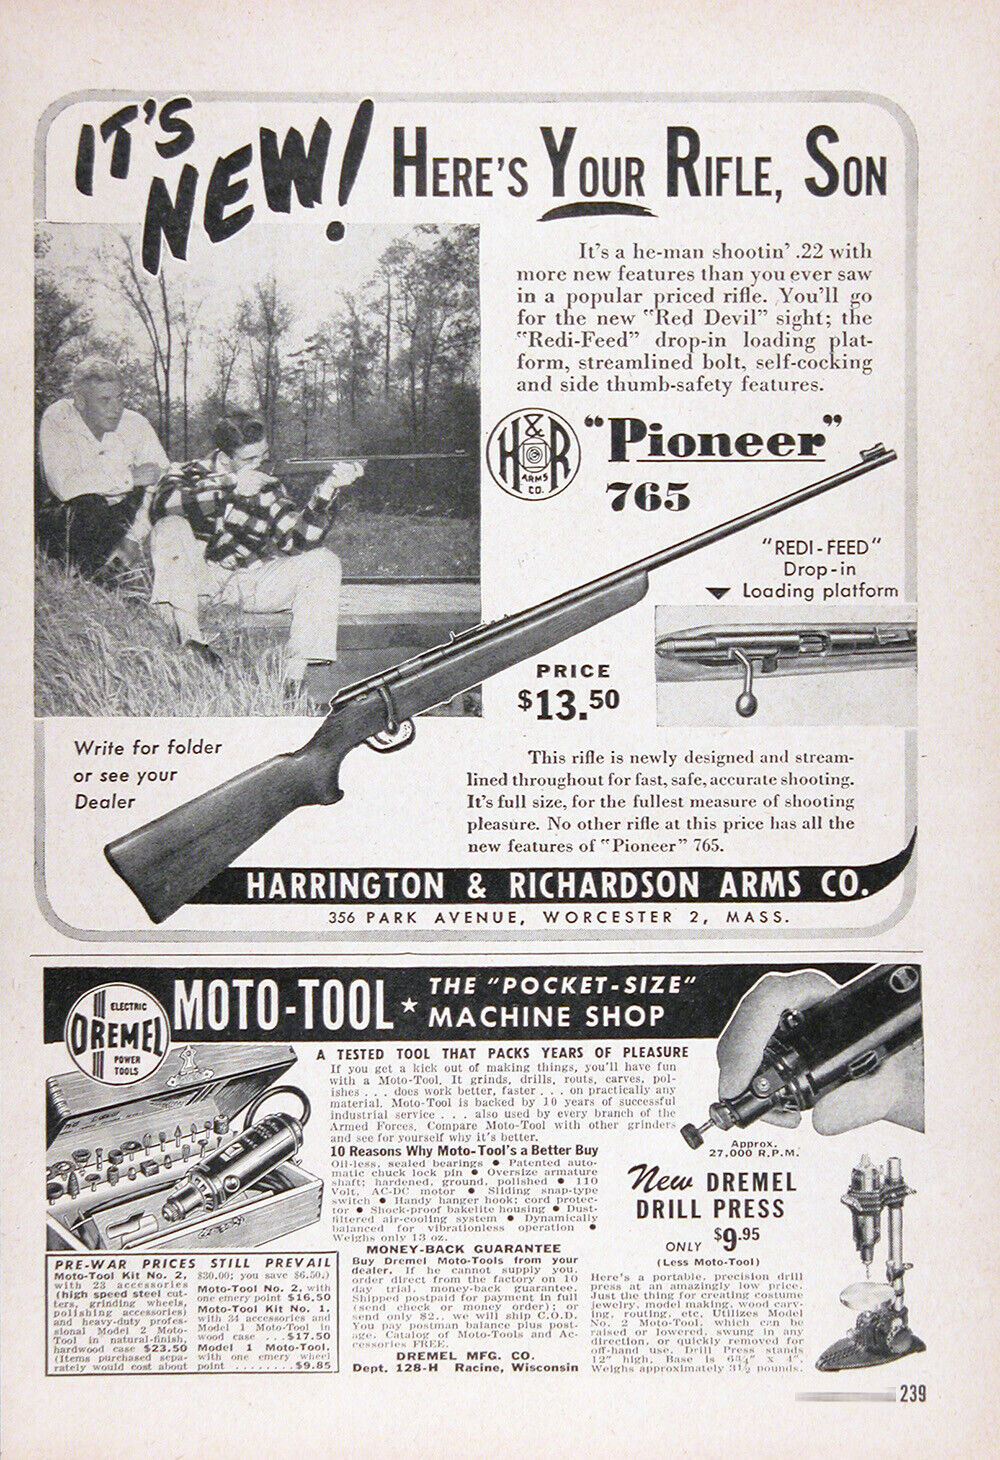 1948 HARRINGTON & RICHARDSON PIONEER 765 RIFLE Vintage Advertisement ~ $13.50